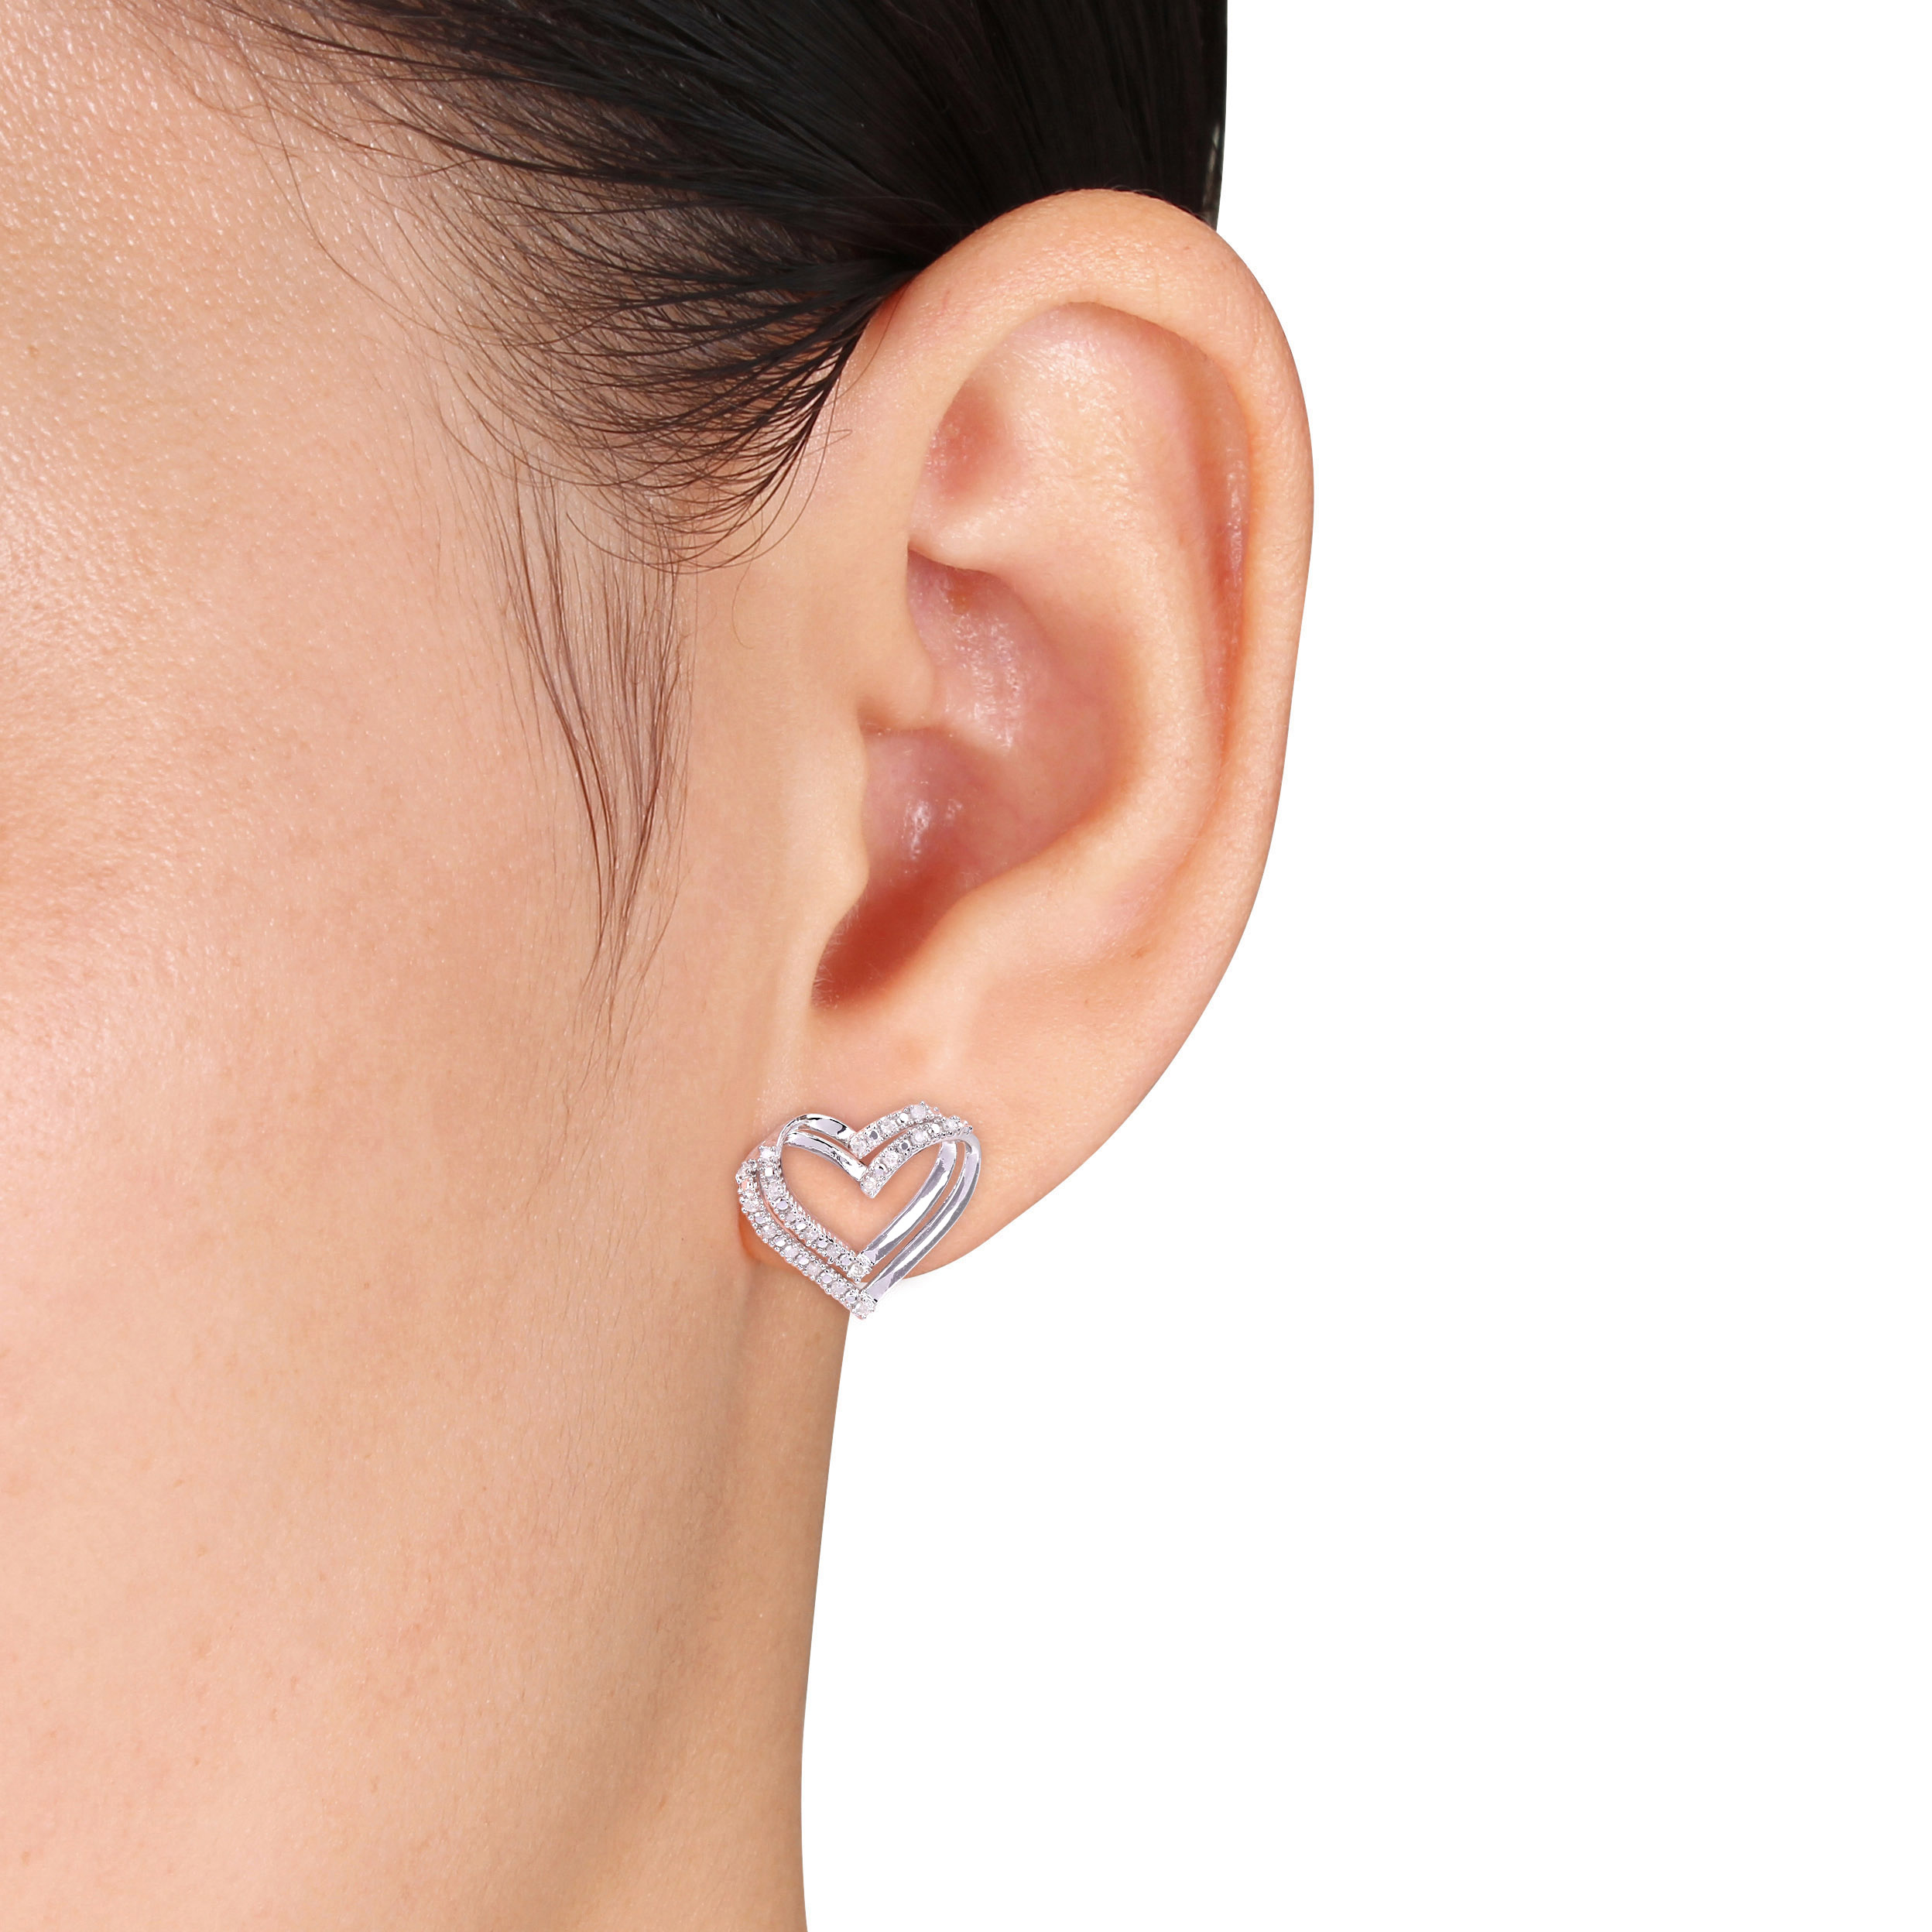 1/5 CT TW Diamond Heart Earrings in Sterling Silver